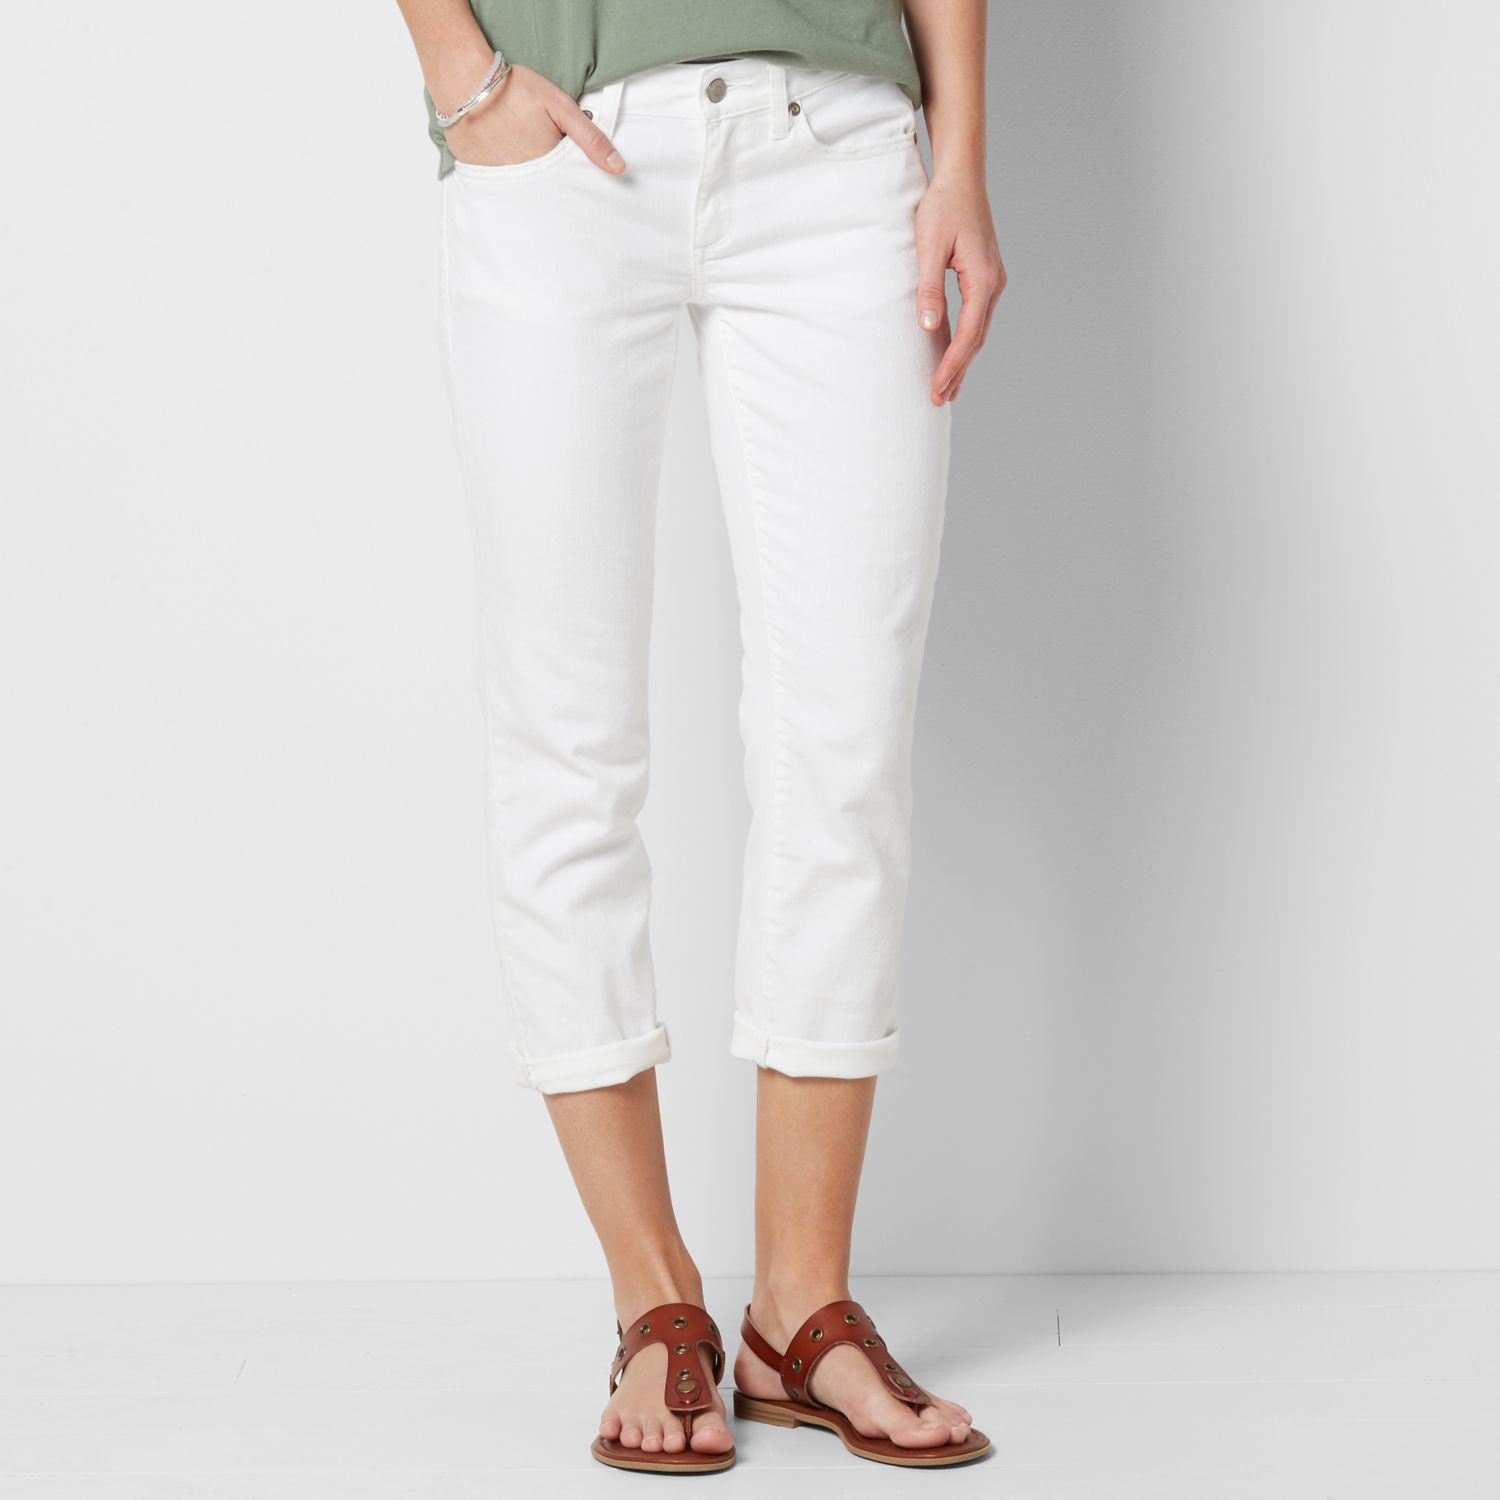 womens white capri jeans